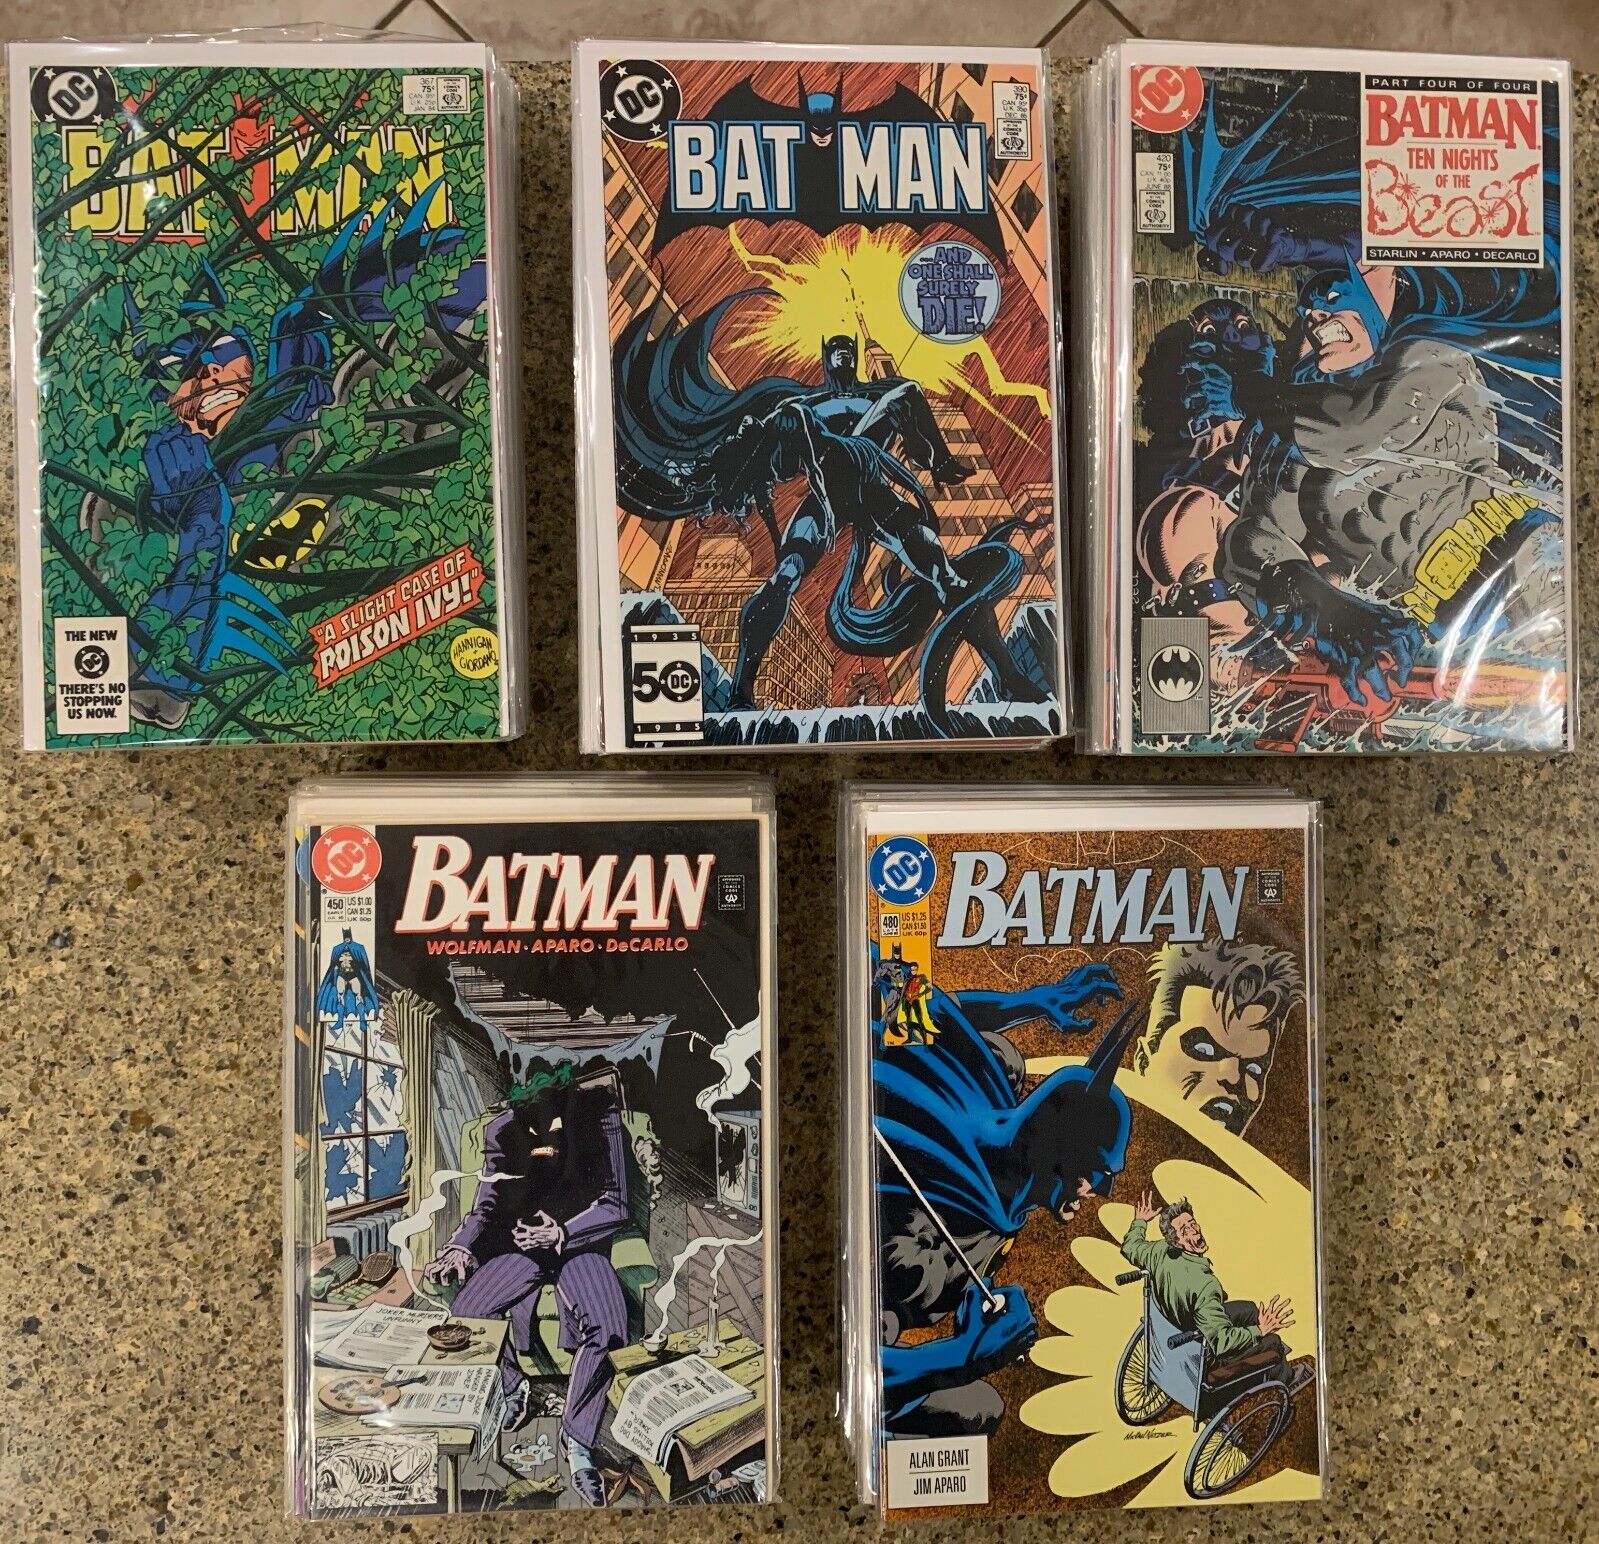 DC Comics: Batman (1940), Issues 367-502, Annuals 9-17 (146 Total)